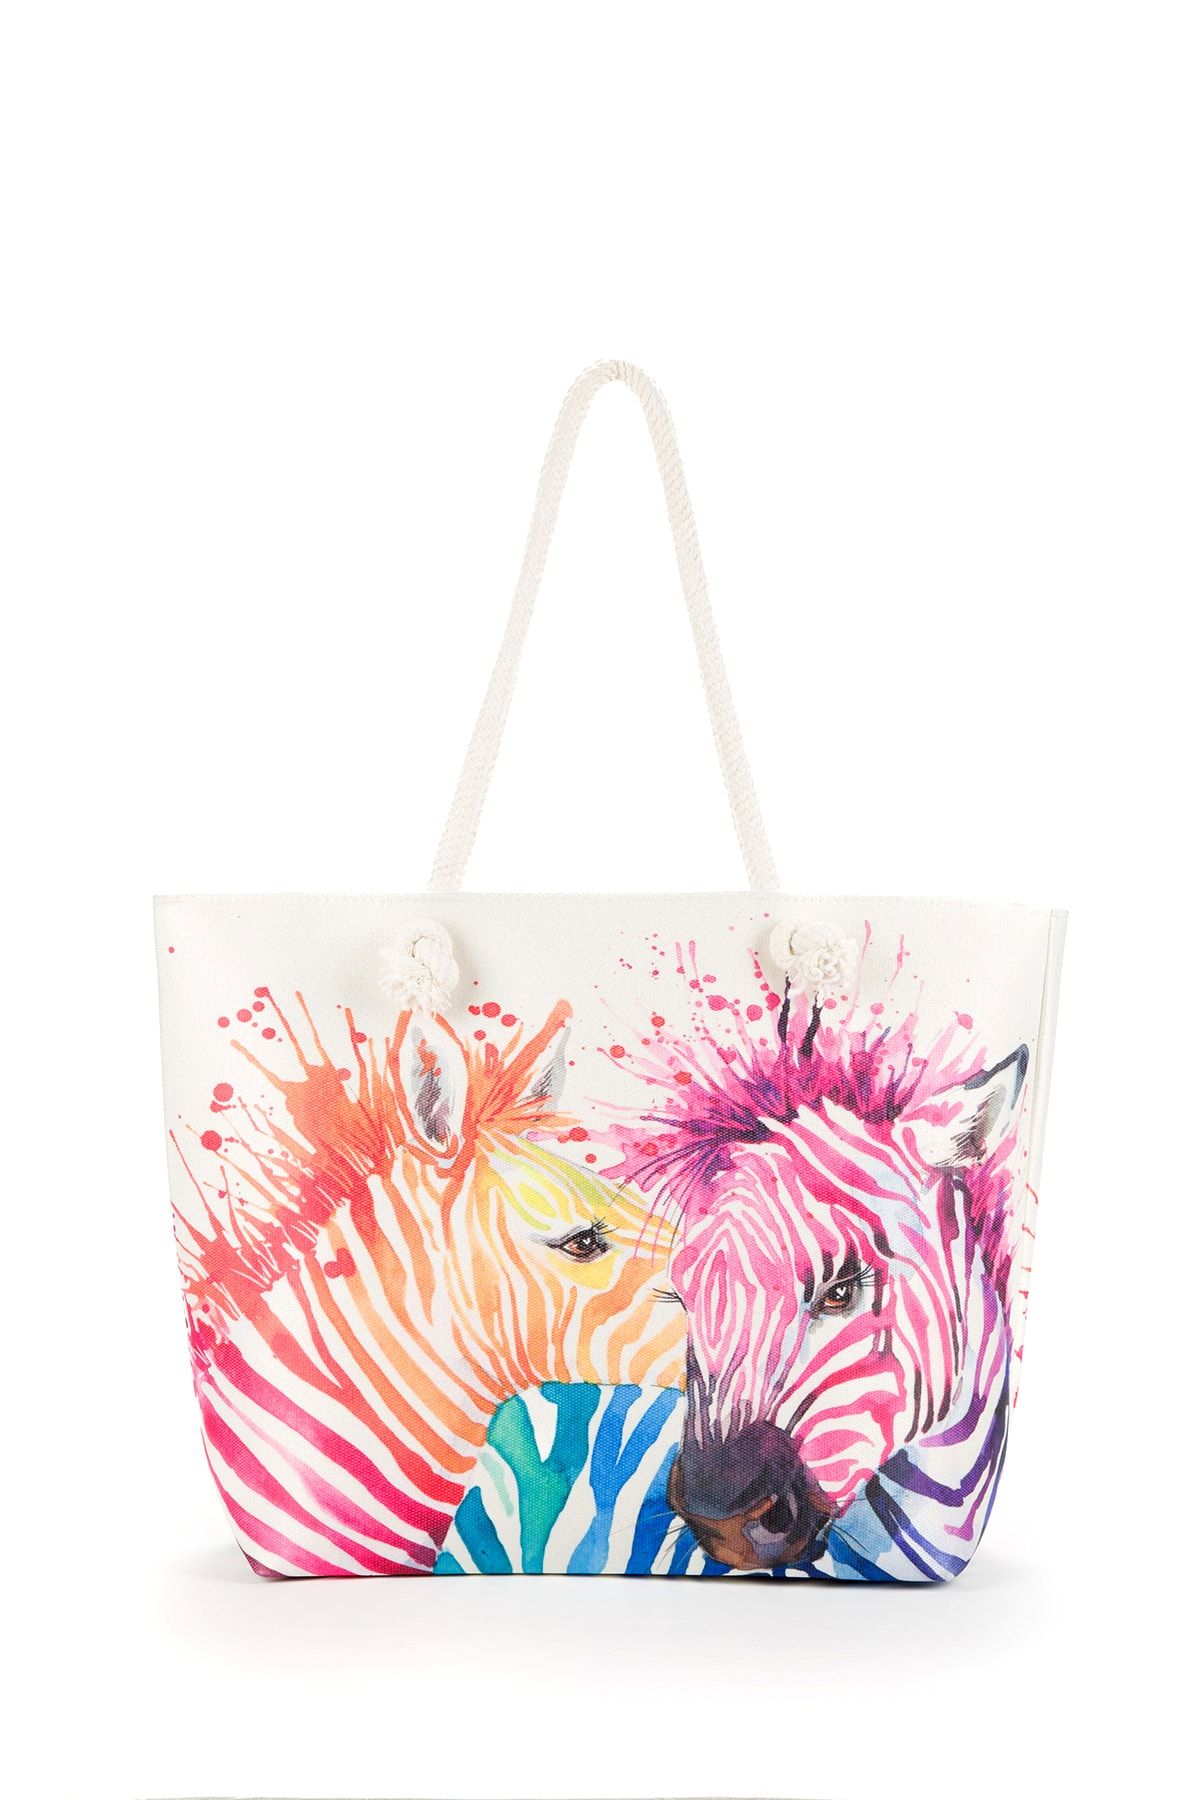 BAGzy Renkli Zebra Desenli Fermuarlı Ip Askılı Kadın Plaj Çantası